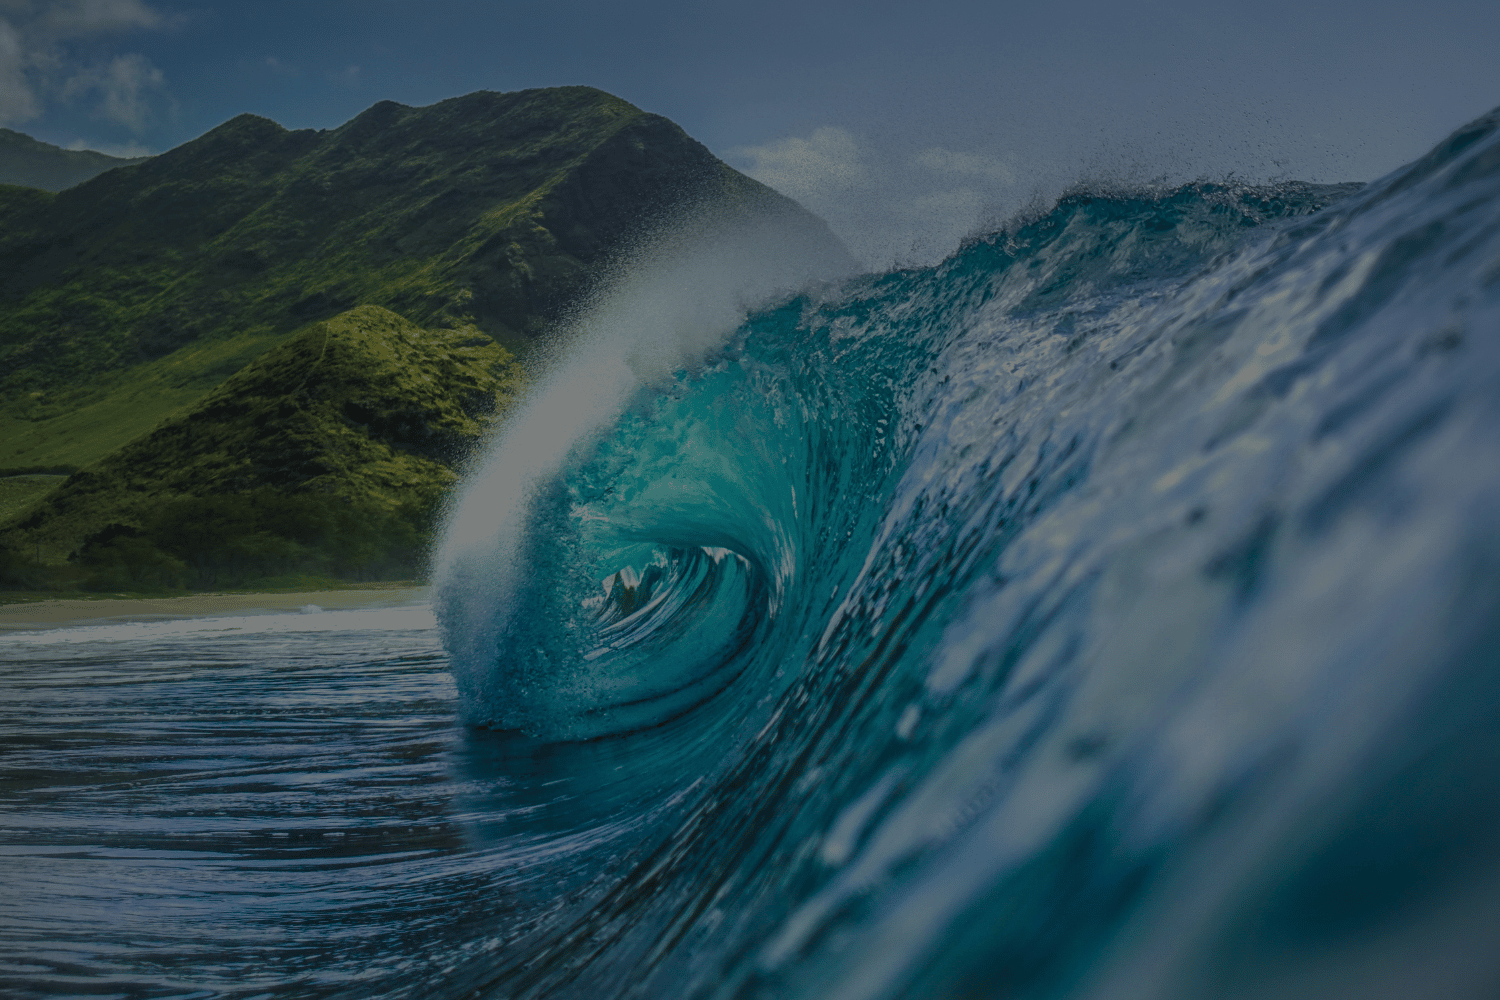 A wave off the coast of Hawaii